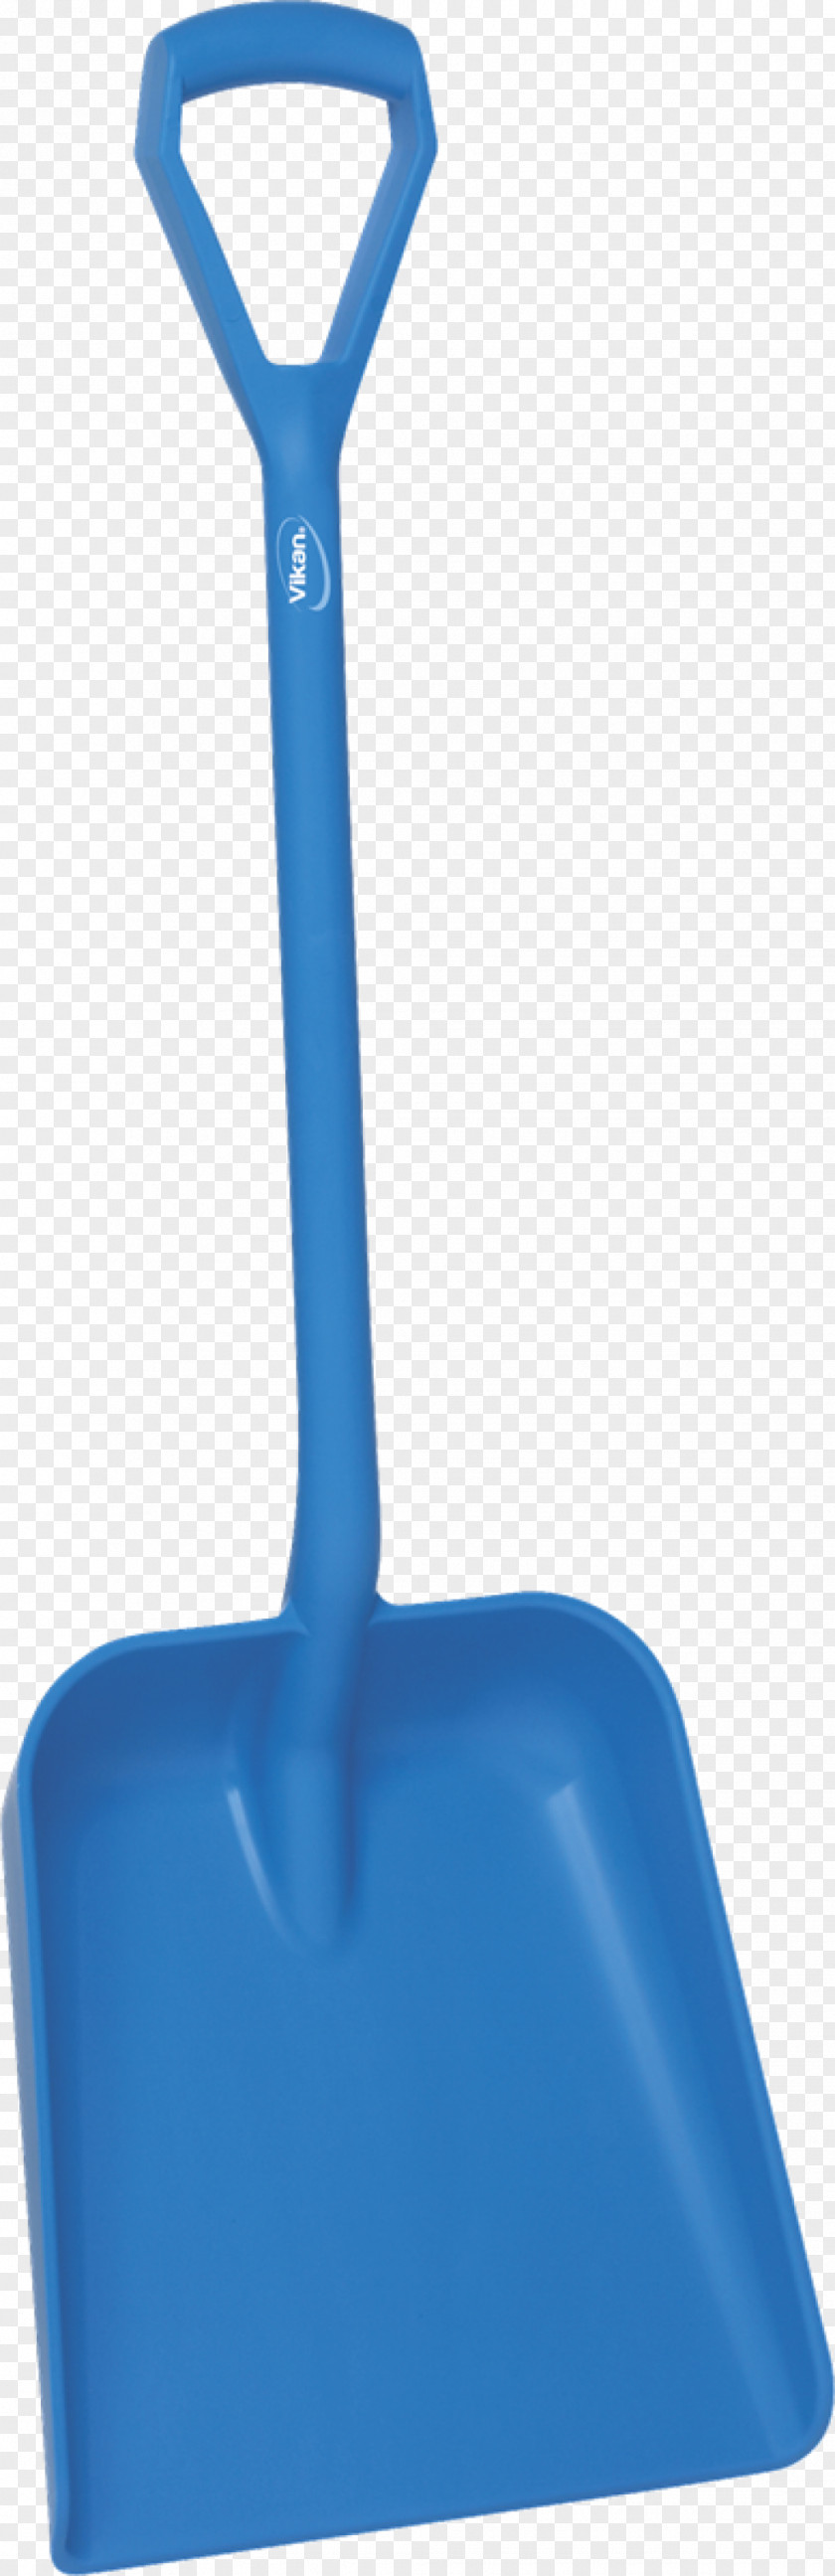 Shovel Tool Dustpan Gardening Forks Spade PNG